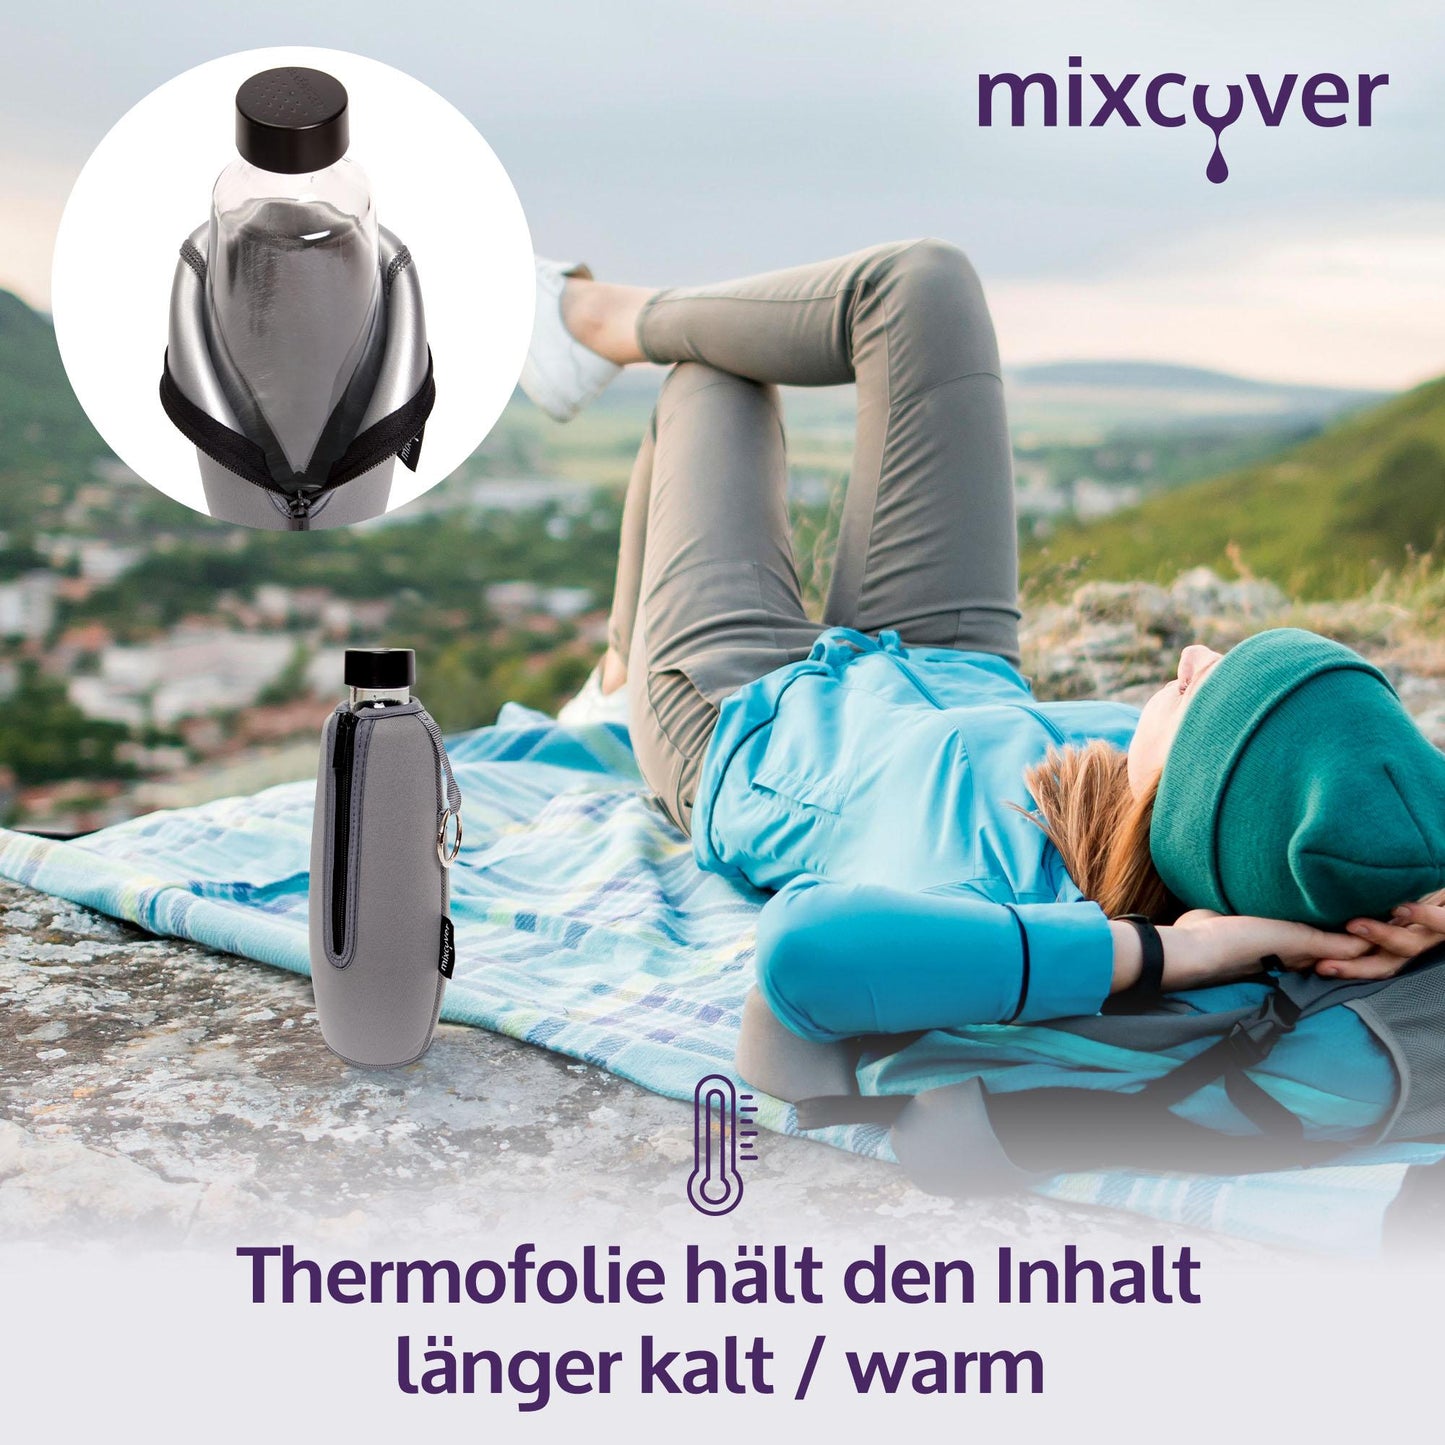 MixCover geïsoleerde flesbeschermingshuls compatibel met Sodastream duo glazen flessen beschermende afdekking voor flessen, bescherming tegen breuk en krassen, kleur zwart